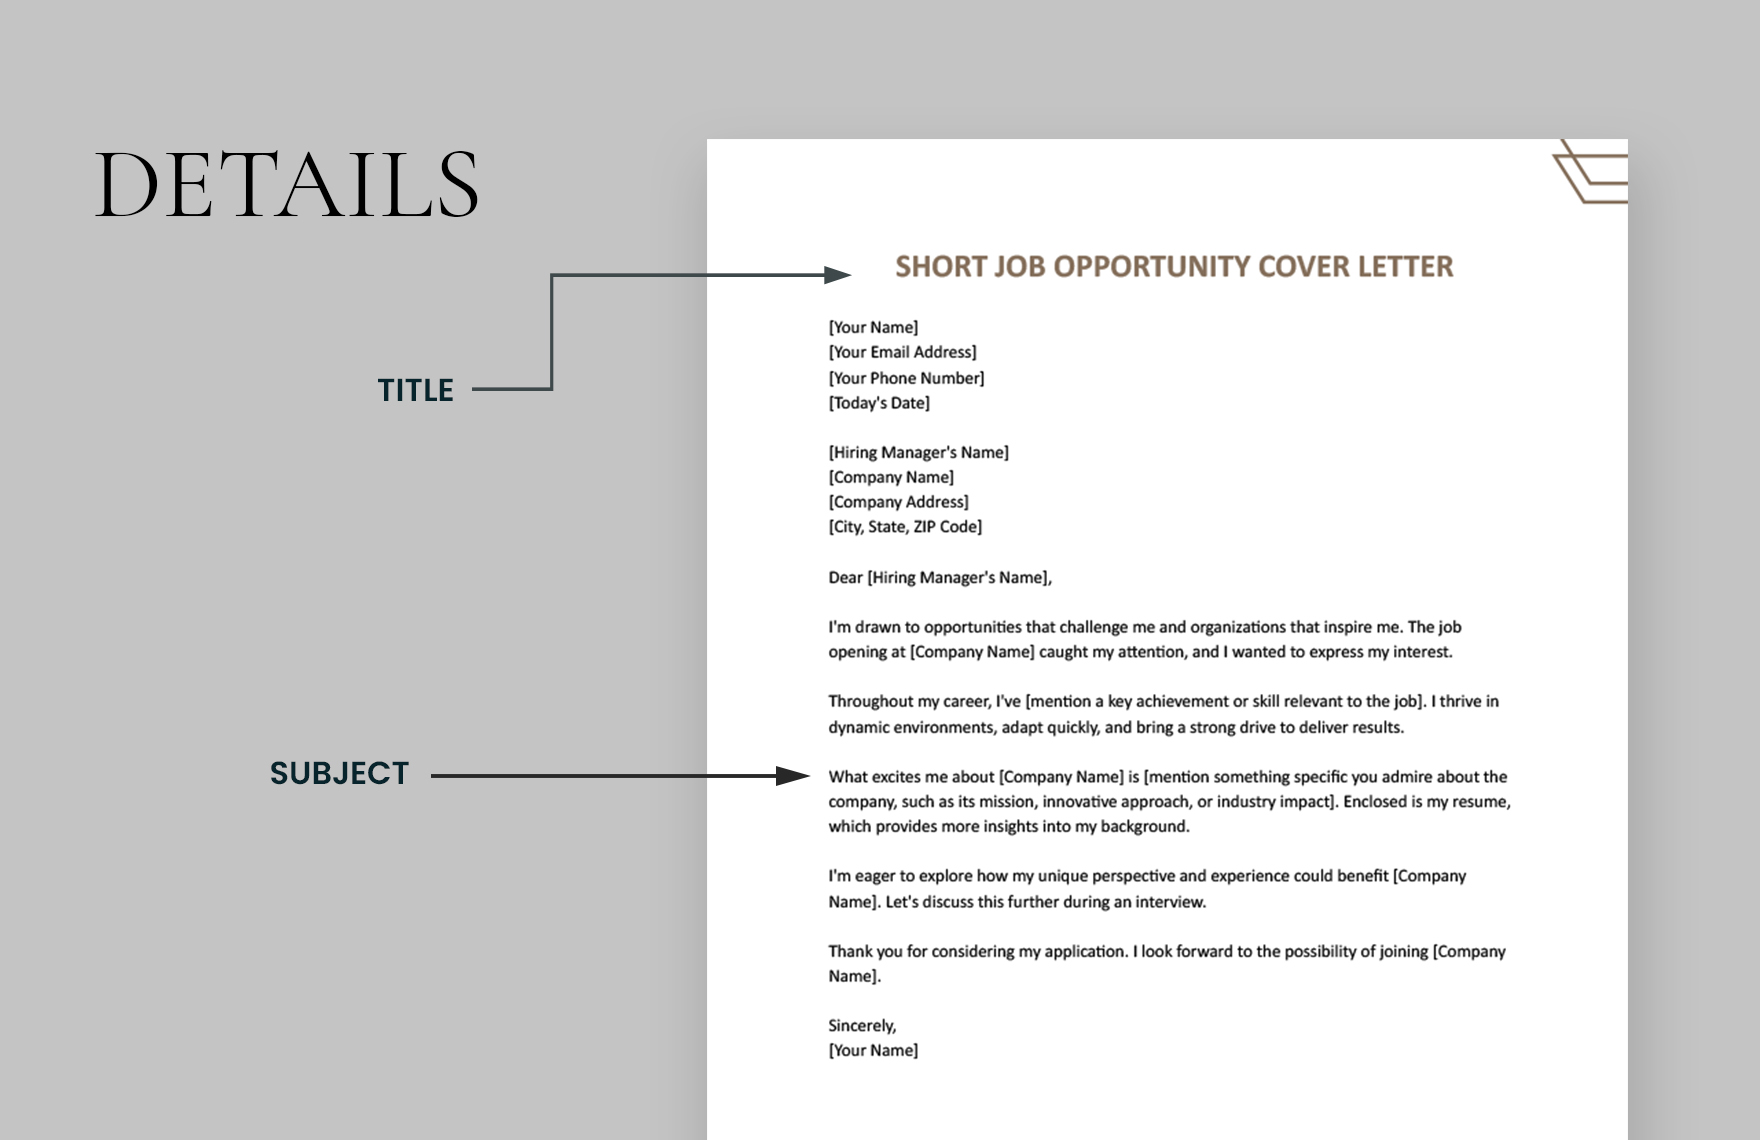 Short Job Opportunity Cover Letter Template